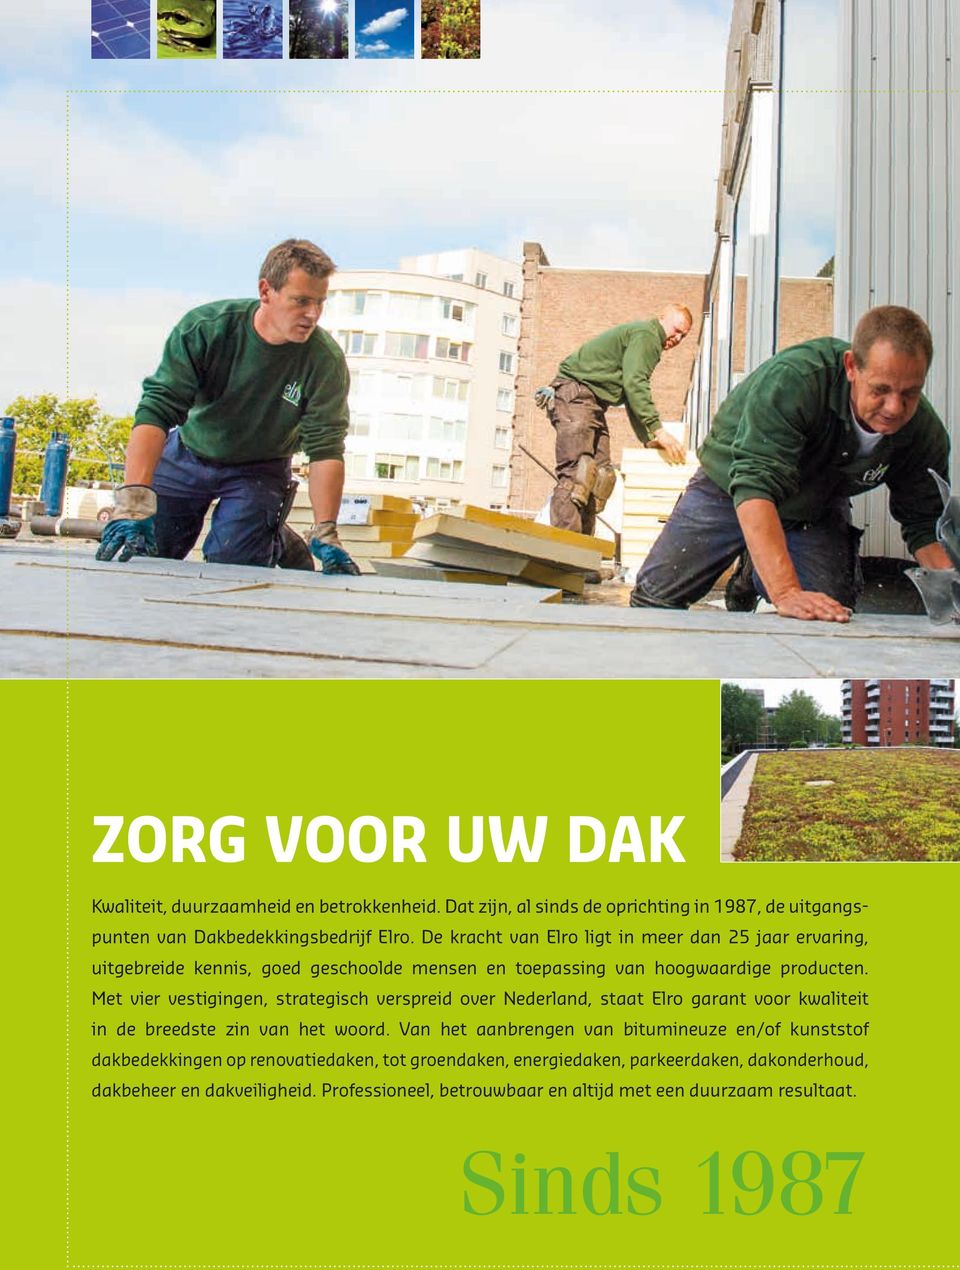 Met vier vestigingen, strategisch verspreid over Nederland, staat Elro garant voor kwaliteit in de breedste zin van het woord.